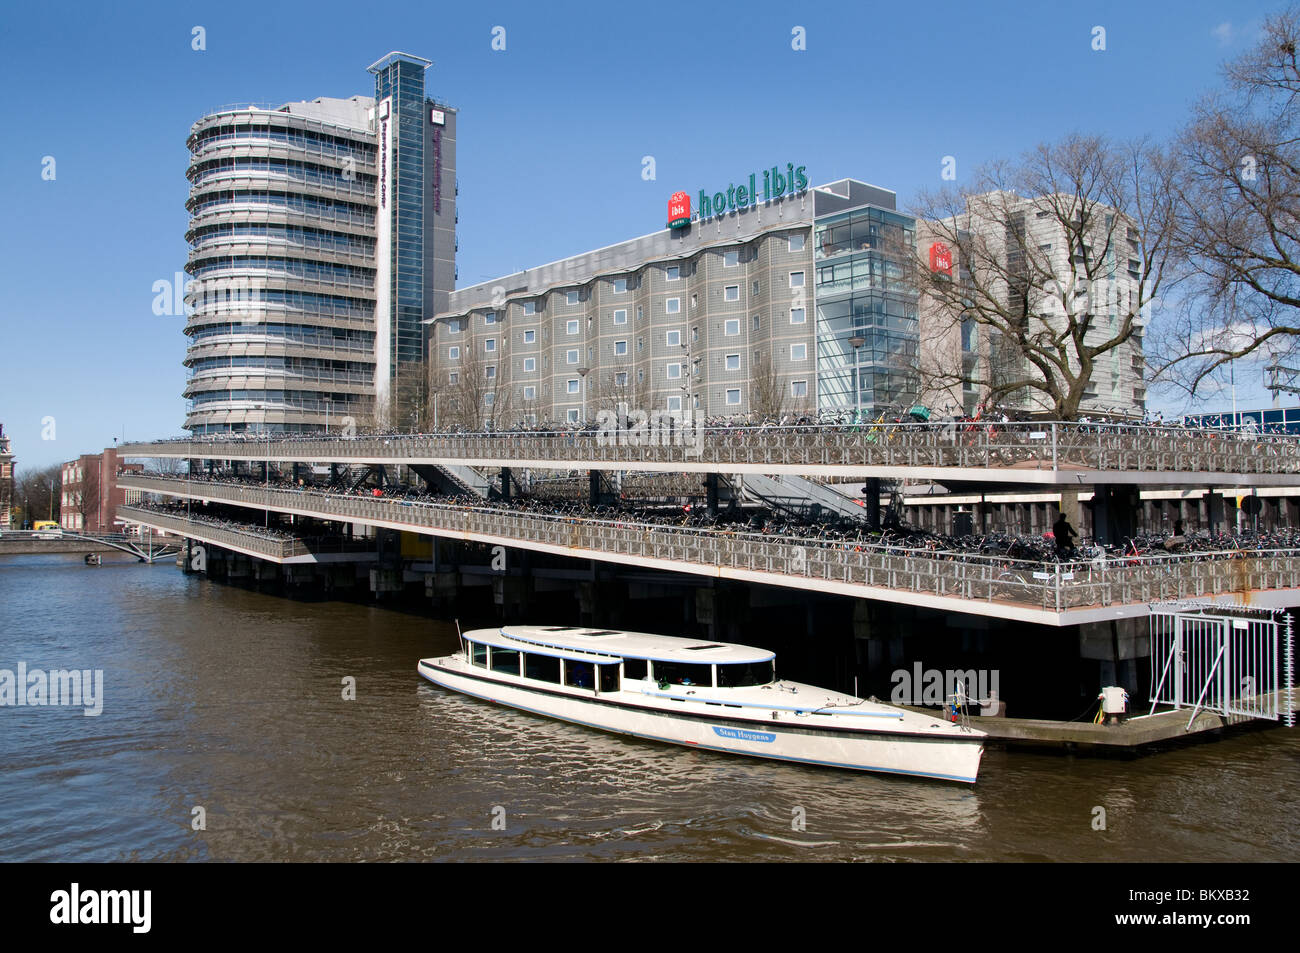 Hauptbahnhof Amsterdam Niederlande Fahrrad Fahrrad speichern Tierheim Boot Ibis Hotel Stockfoto